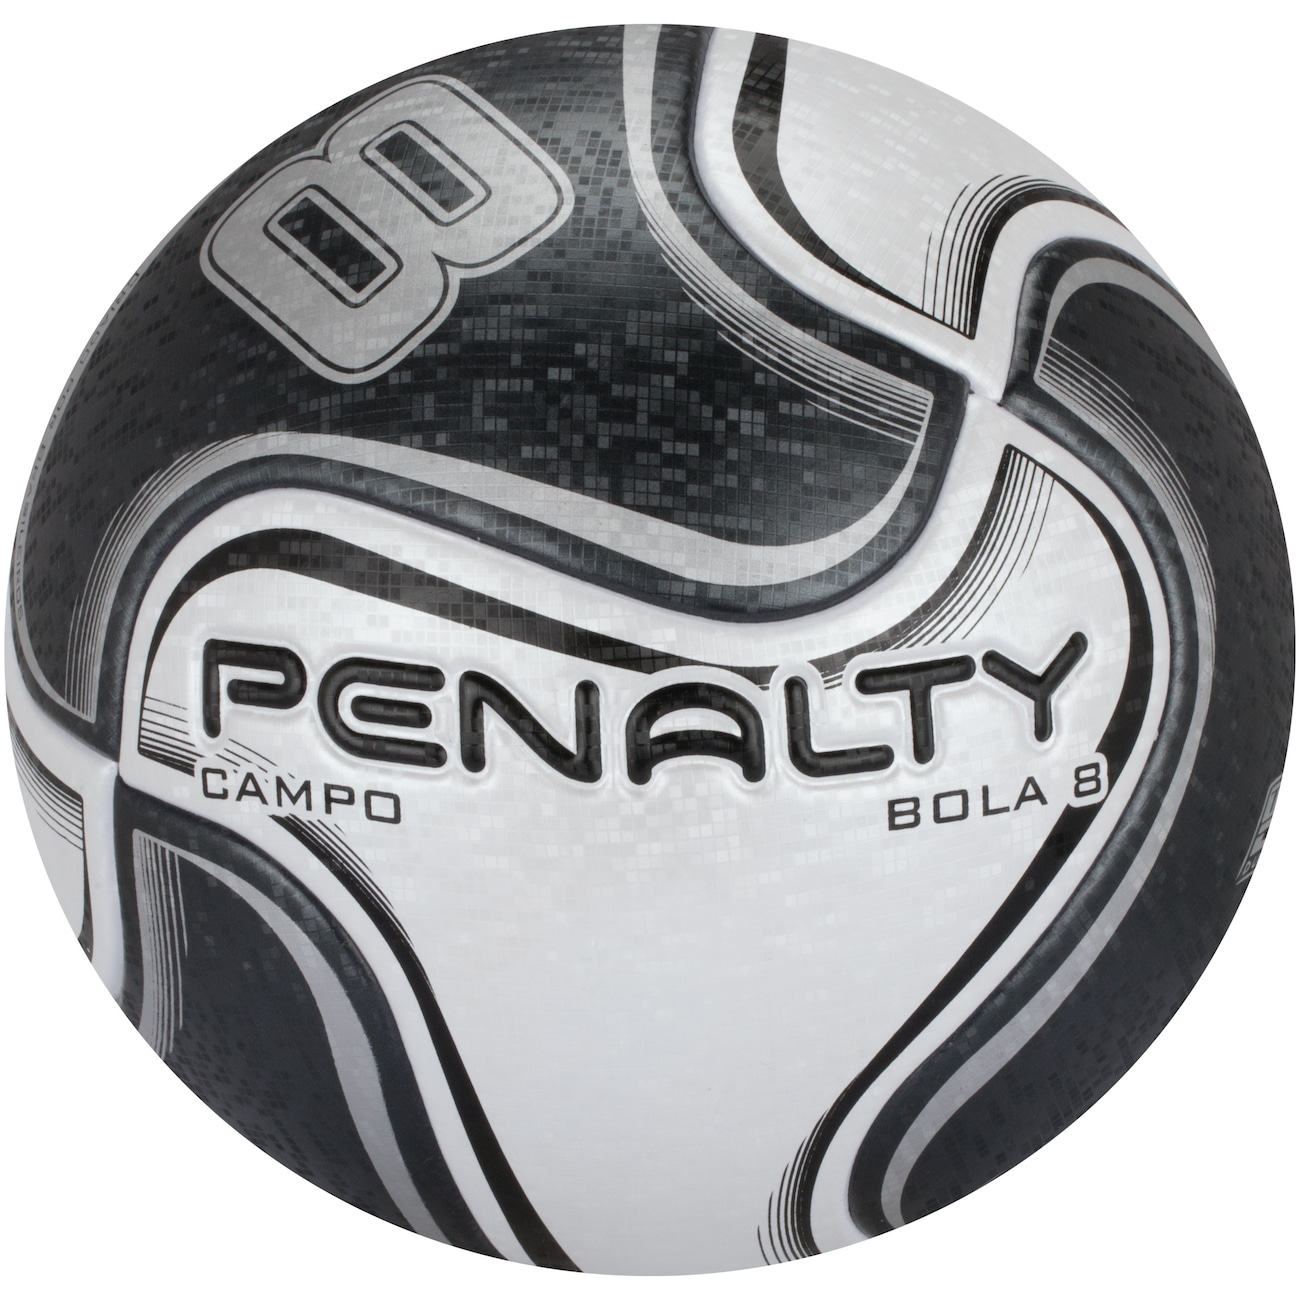 Penalty - Bolas e Acessórios - RR Store